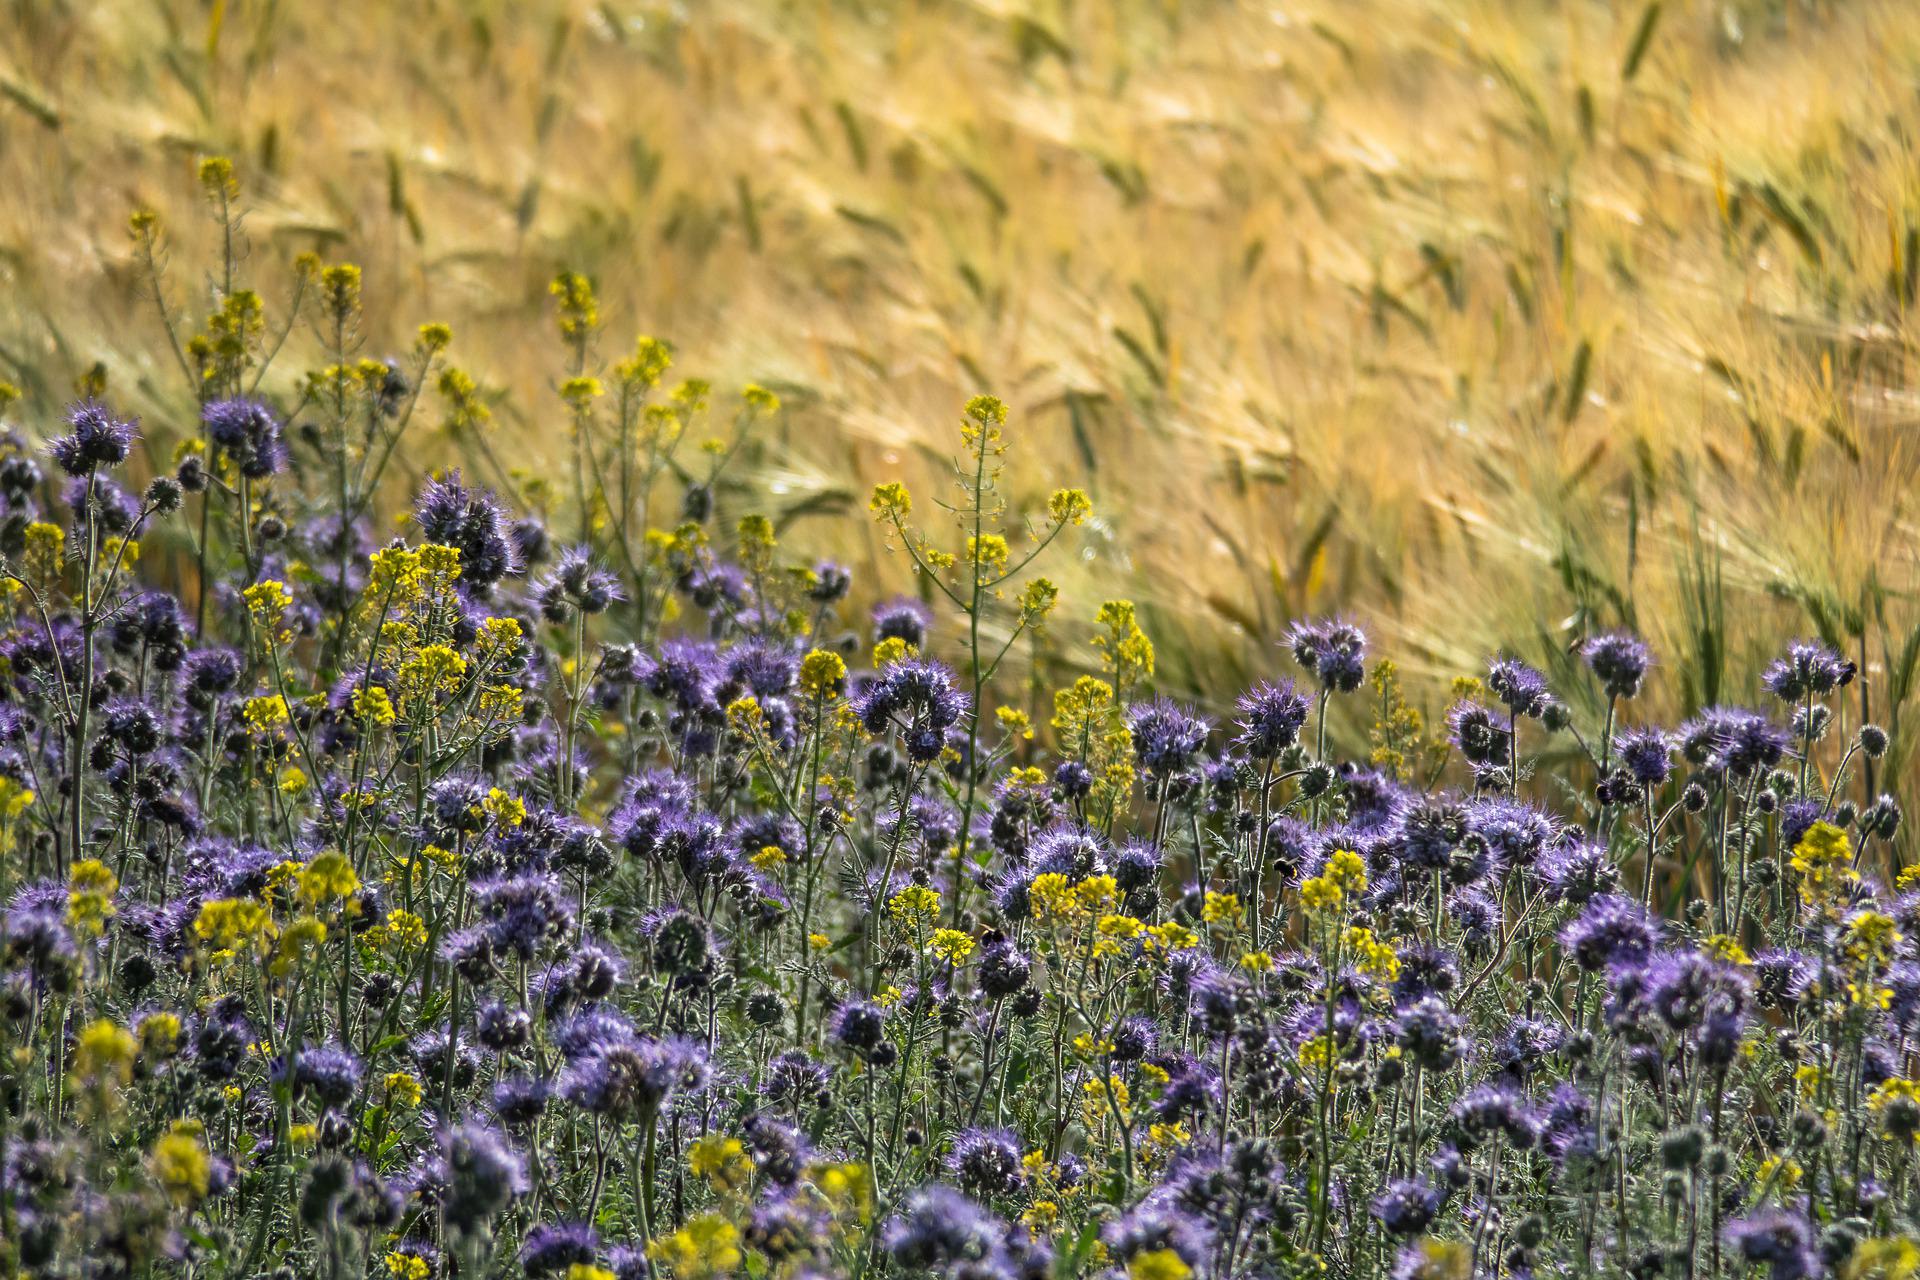 Aufnahme eines dichtbestandenen Feldes mit gelben und violetten Blüten. Im Hintergrund ist unscharf Weizen zu sehen.